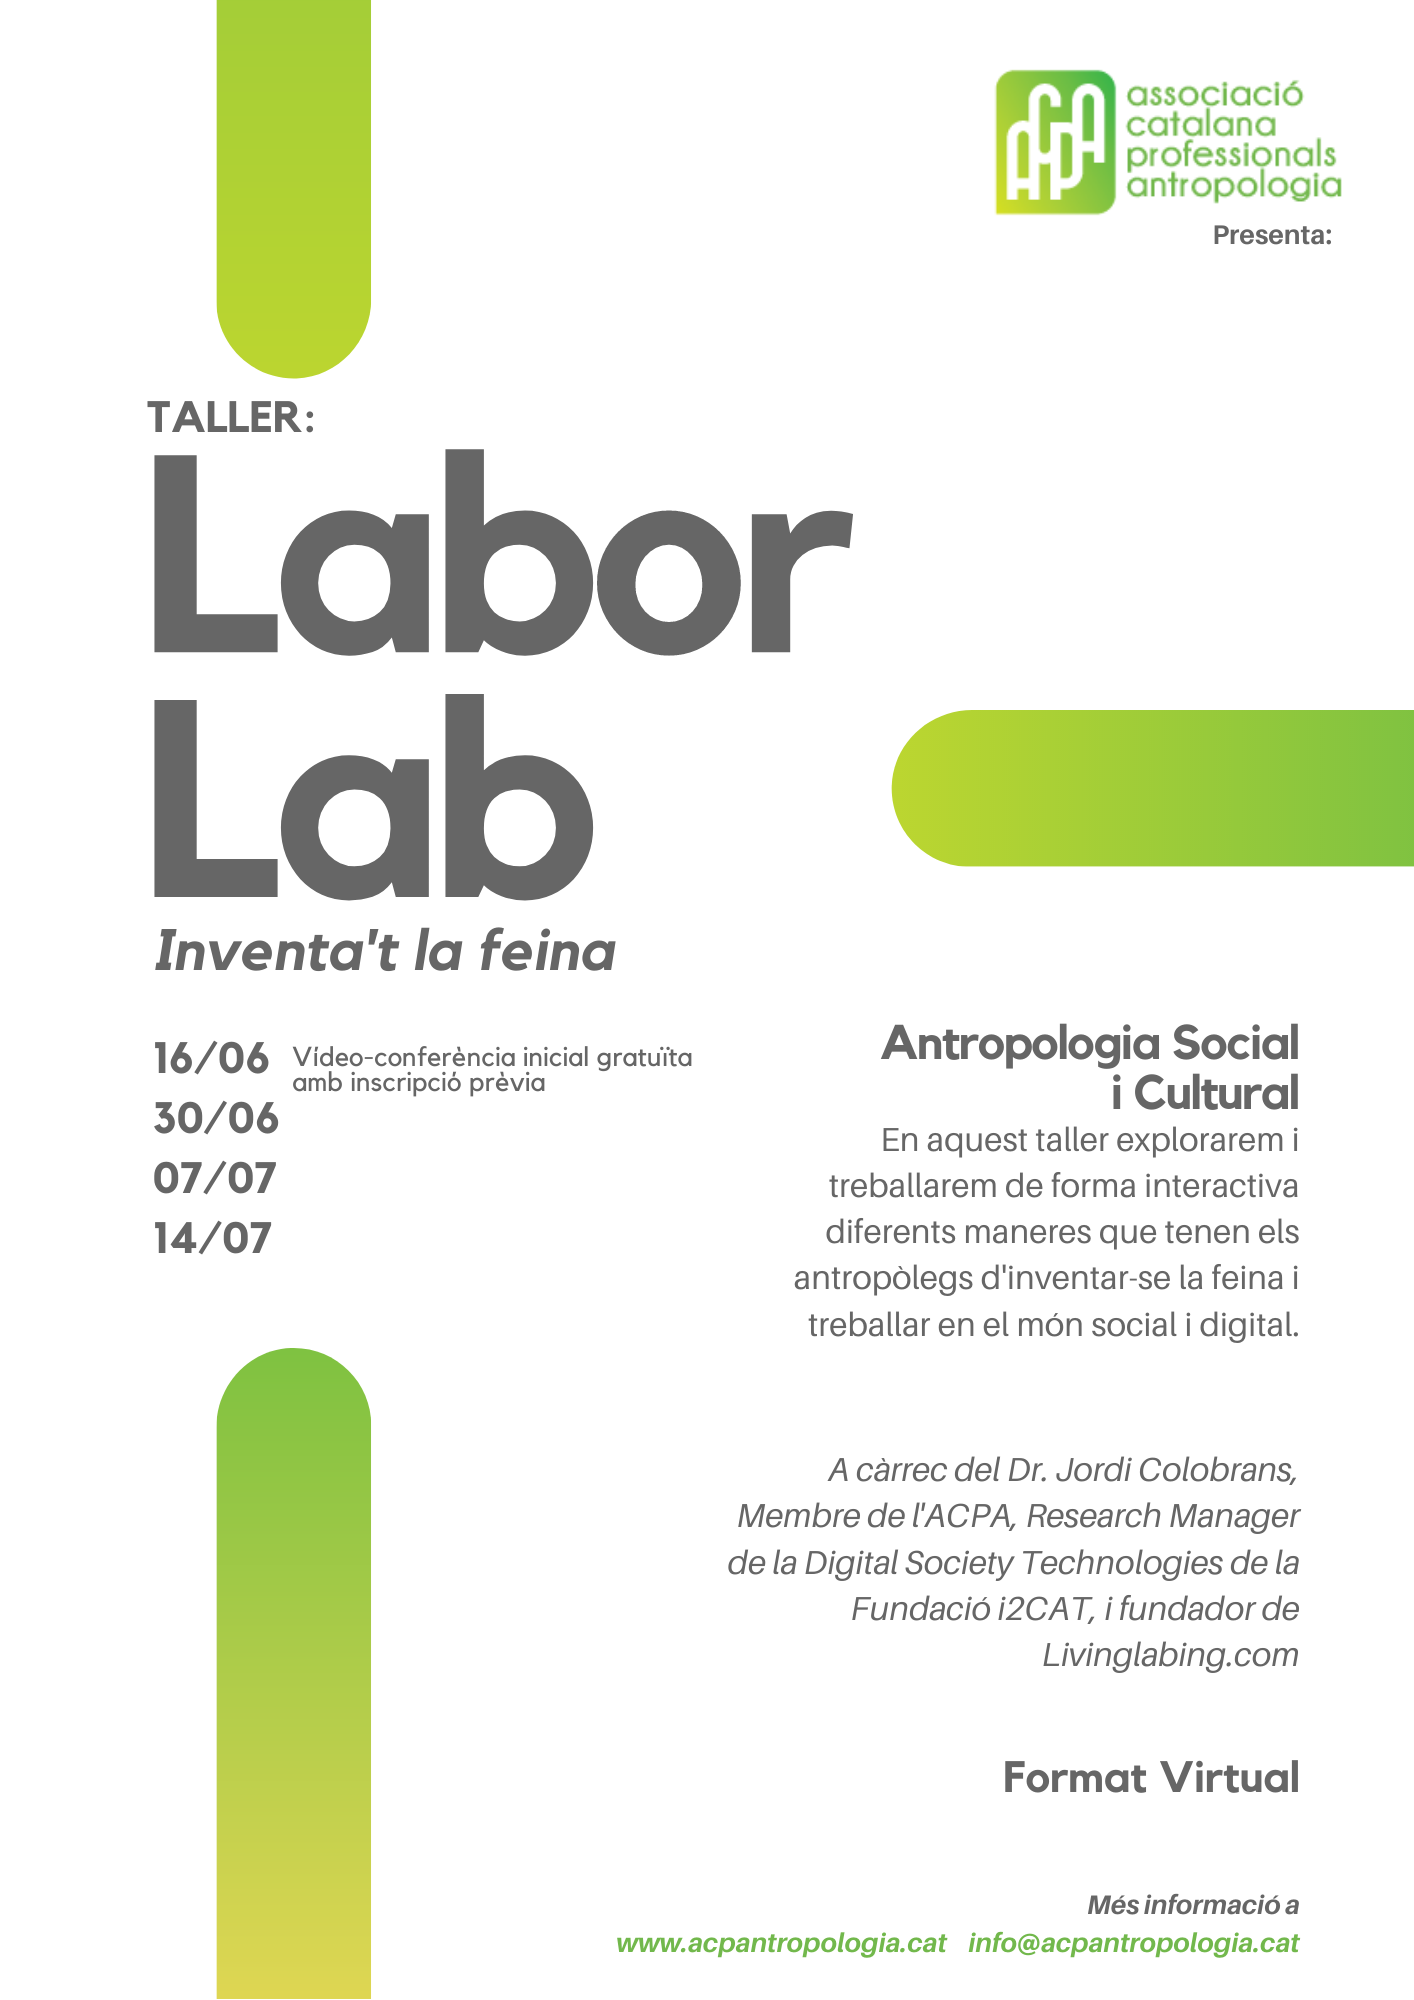 LaborLab “Inventa’t la feina” per ACPA